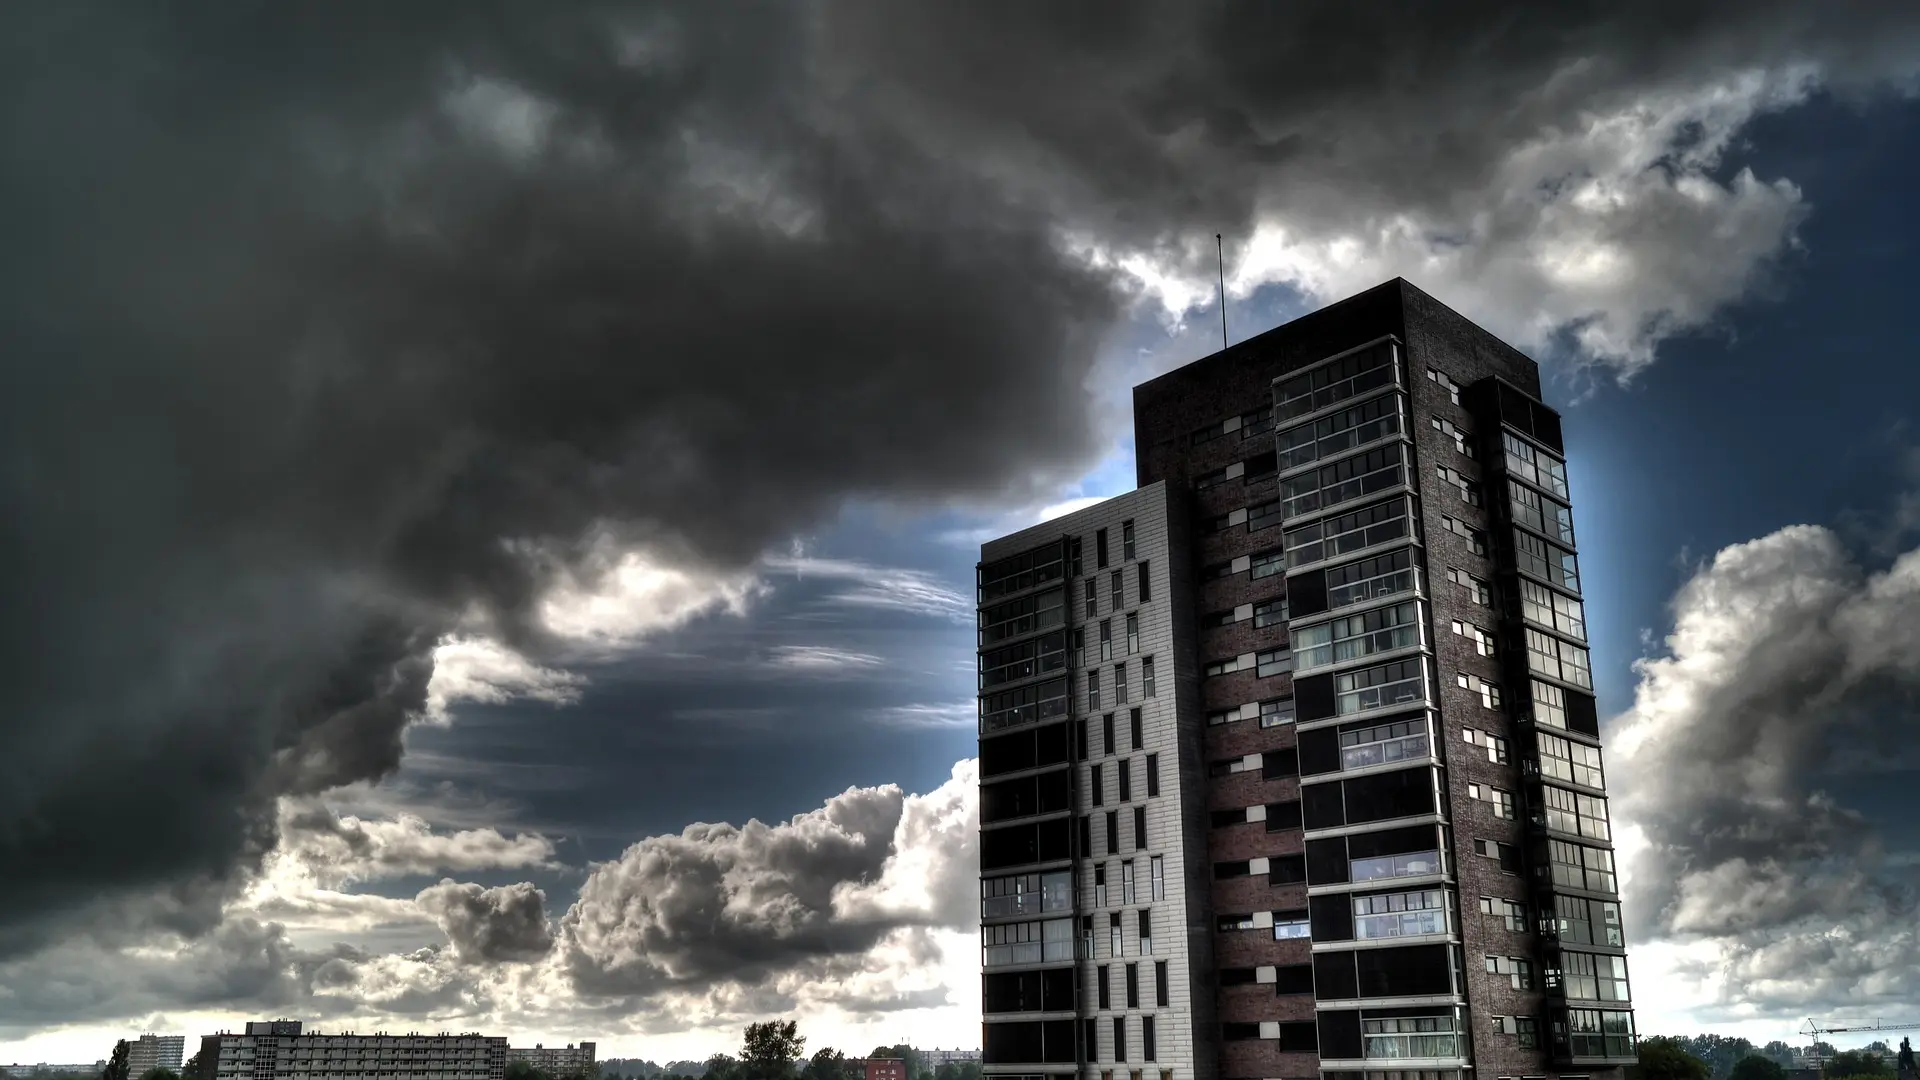 nevreme, oblačno, grad, zgrada, kiša pixabay oblak oblaci-666ac695be59b.webp